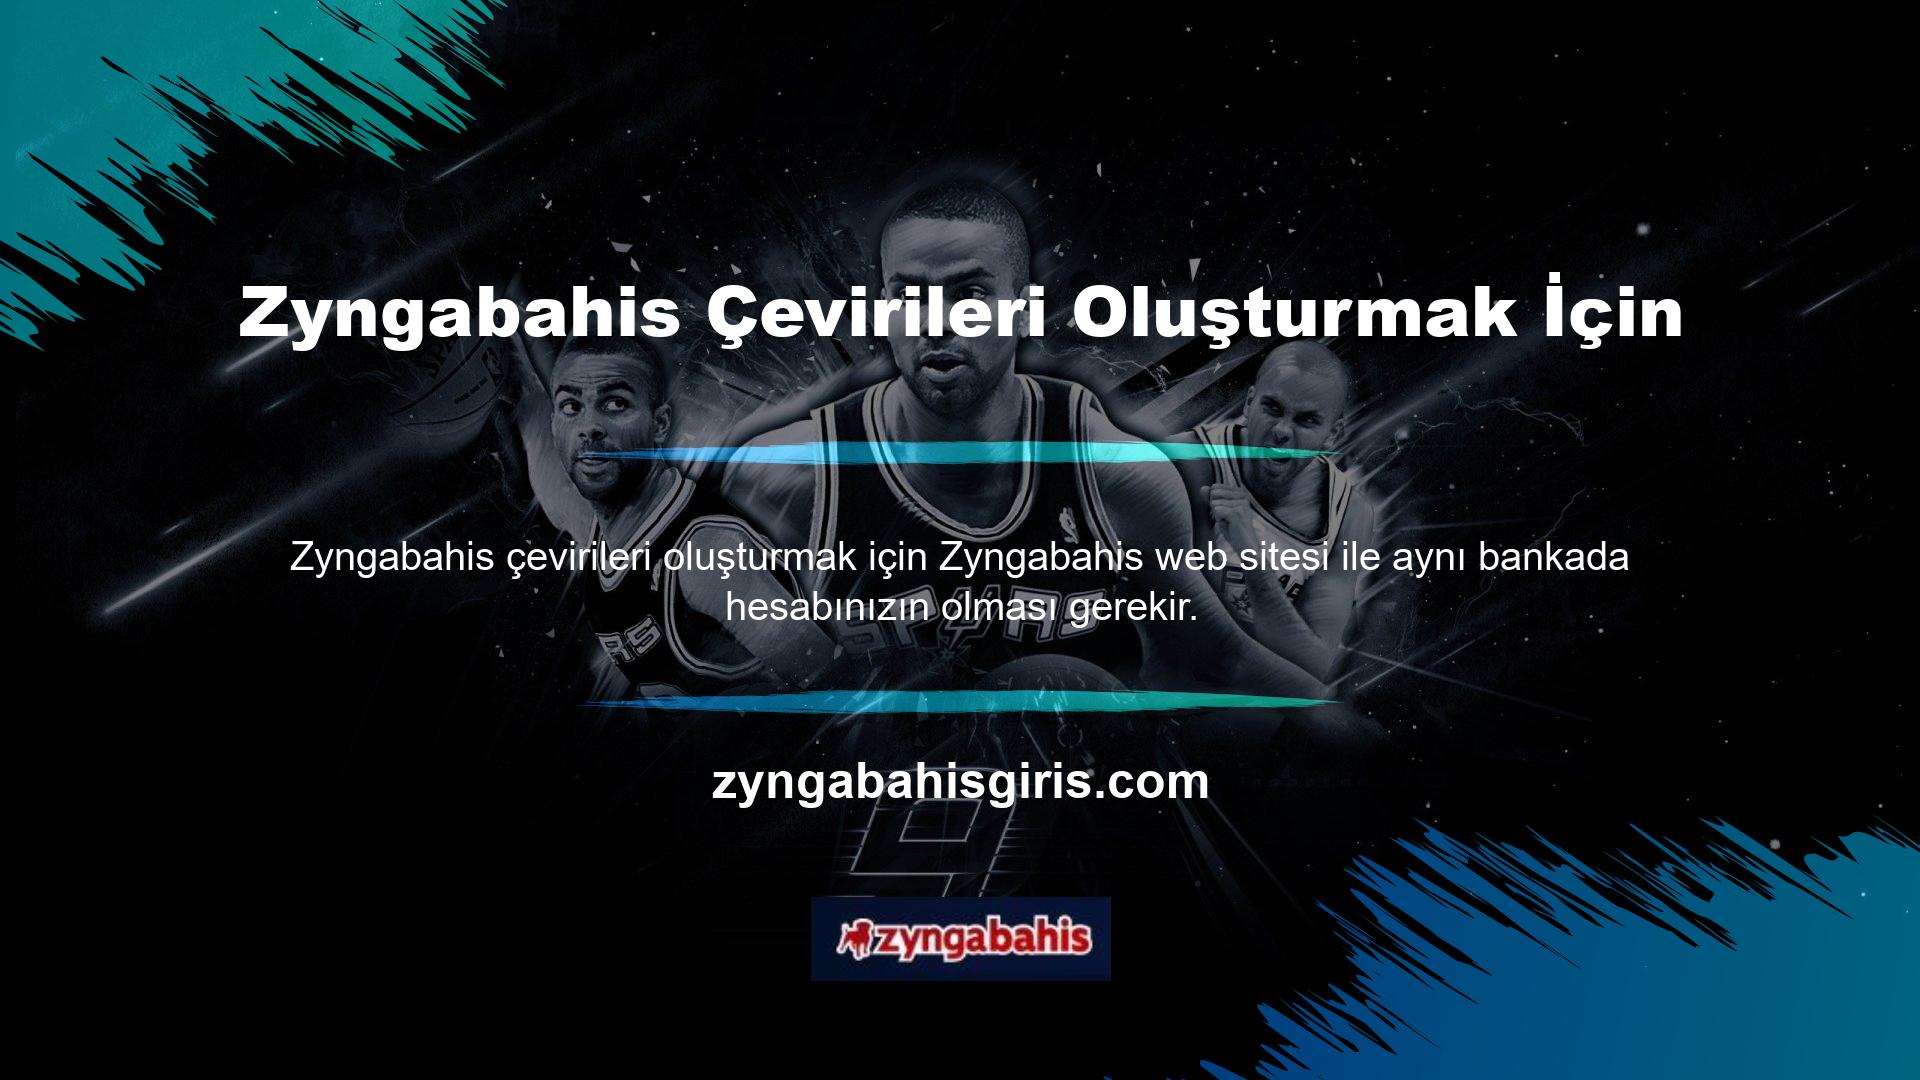 Zyngabahis transferlerini kabul eden bankalarla ilgili tüm bilgilere Zyngabahis Online Destek ve Zyngabahis Online Destek Hattı üzerinden ulaşabilirsiniz